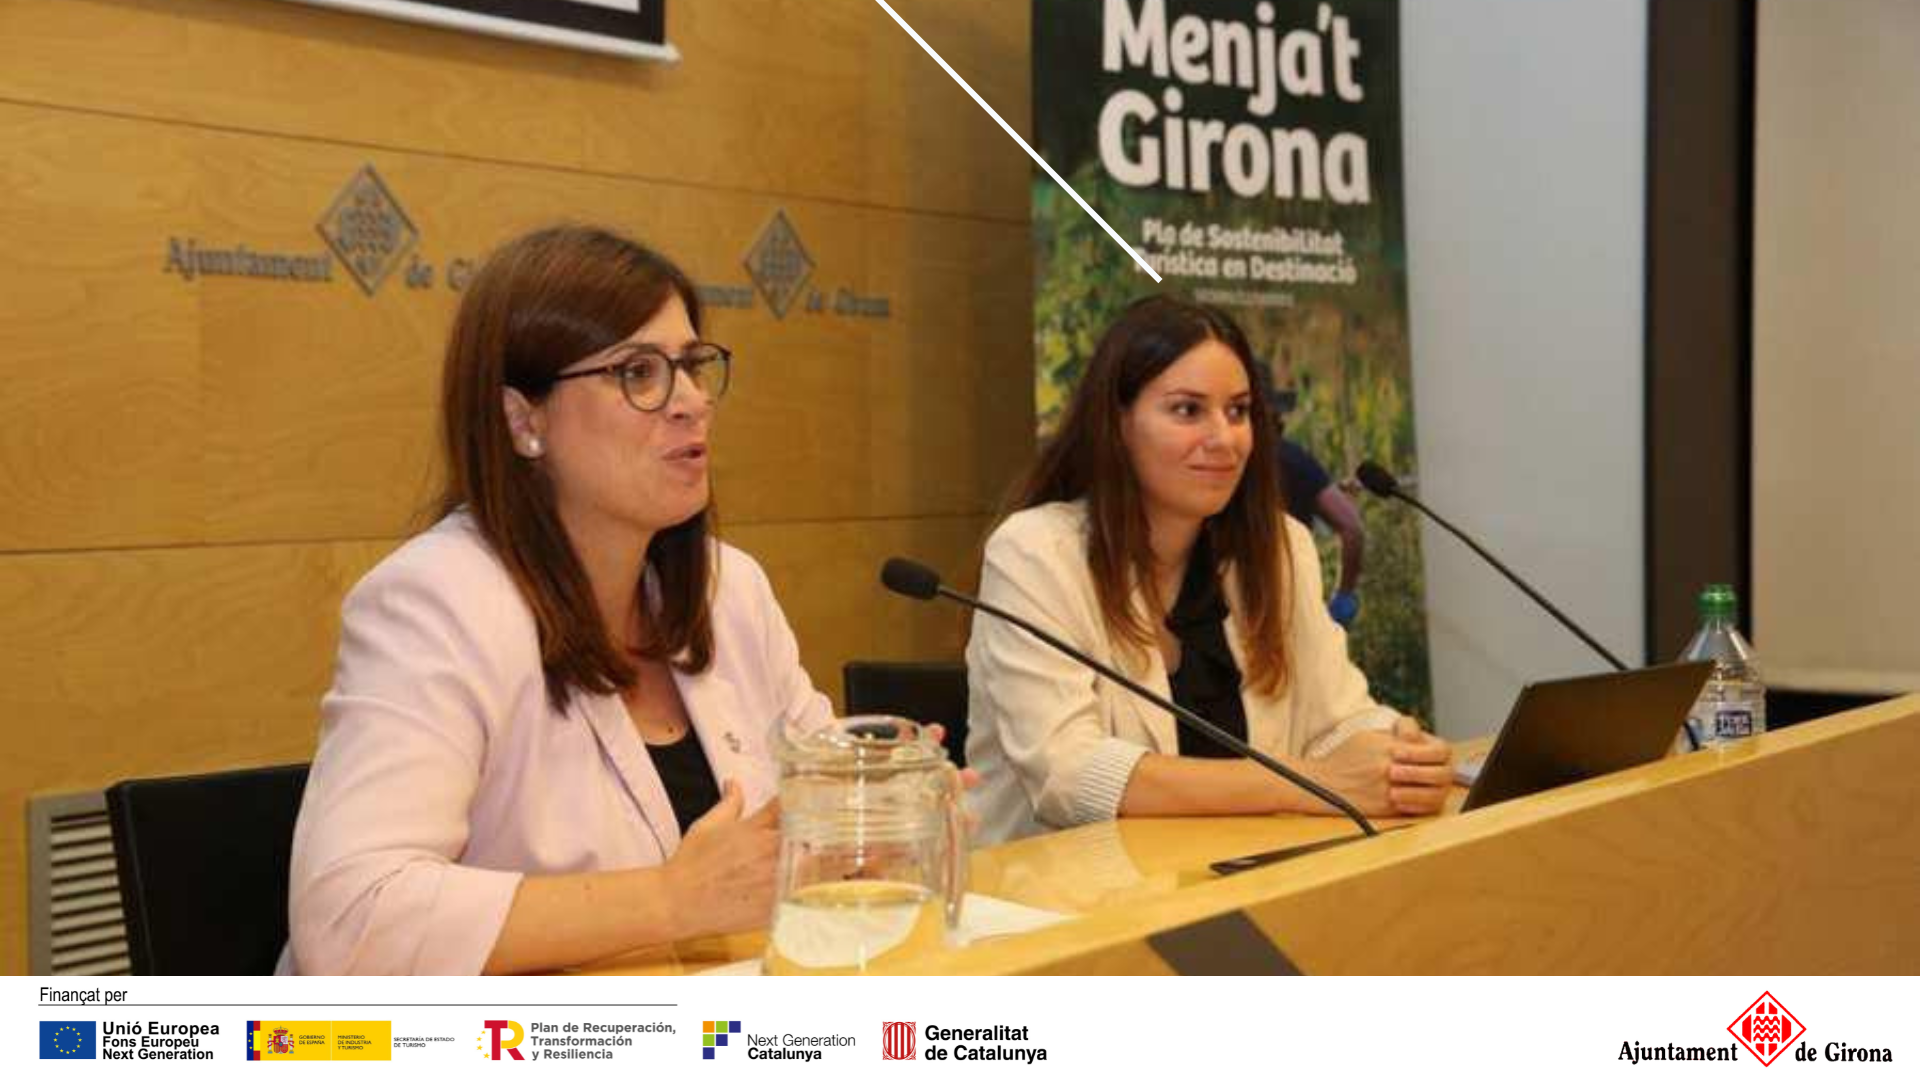 Ayuntamiento de Girona: Diagnóstico, capacitación y asesoramiento en transformación digital para pymes y autónomos